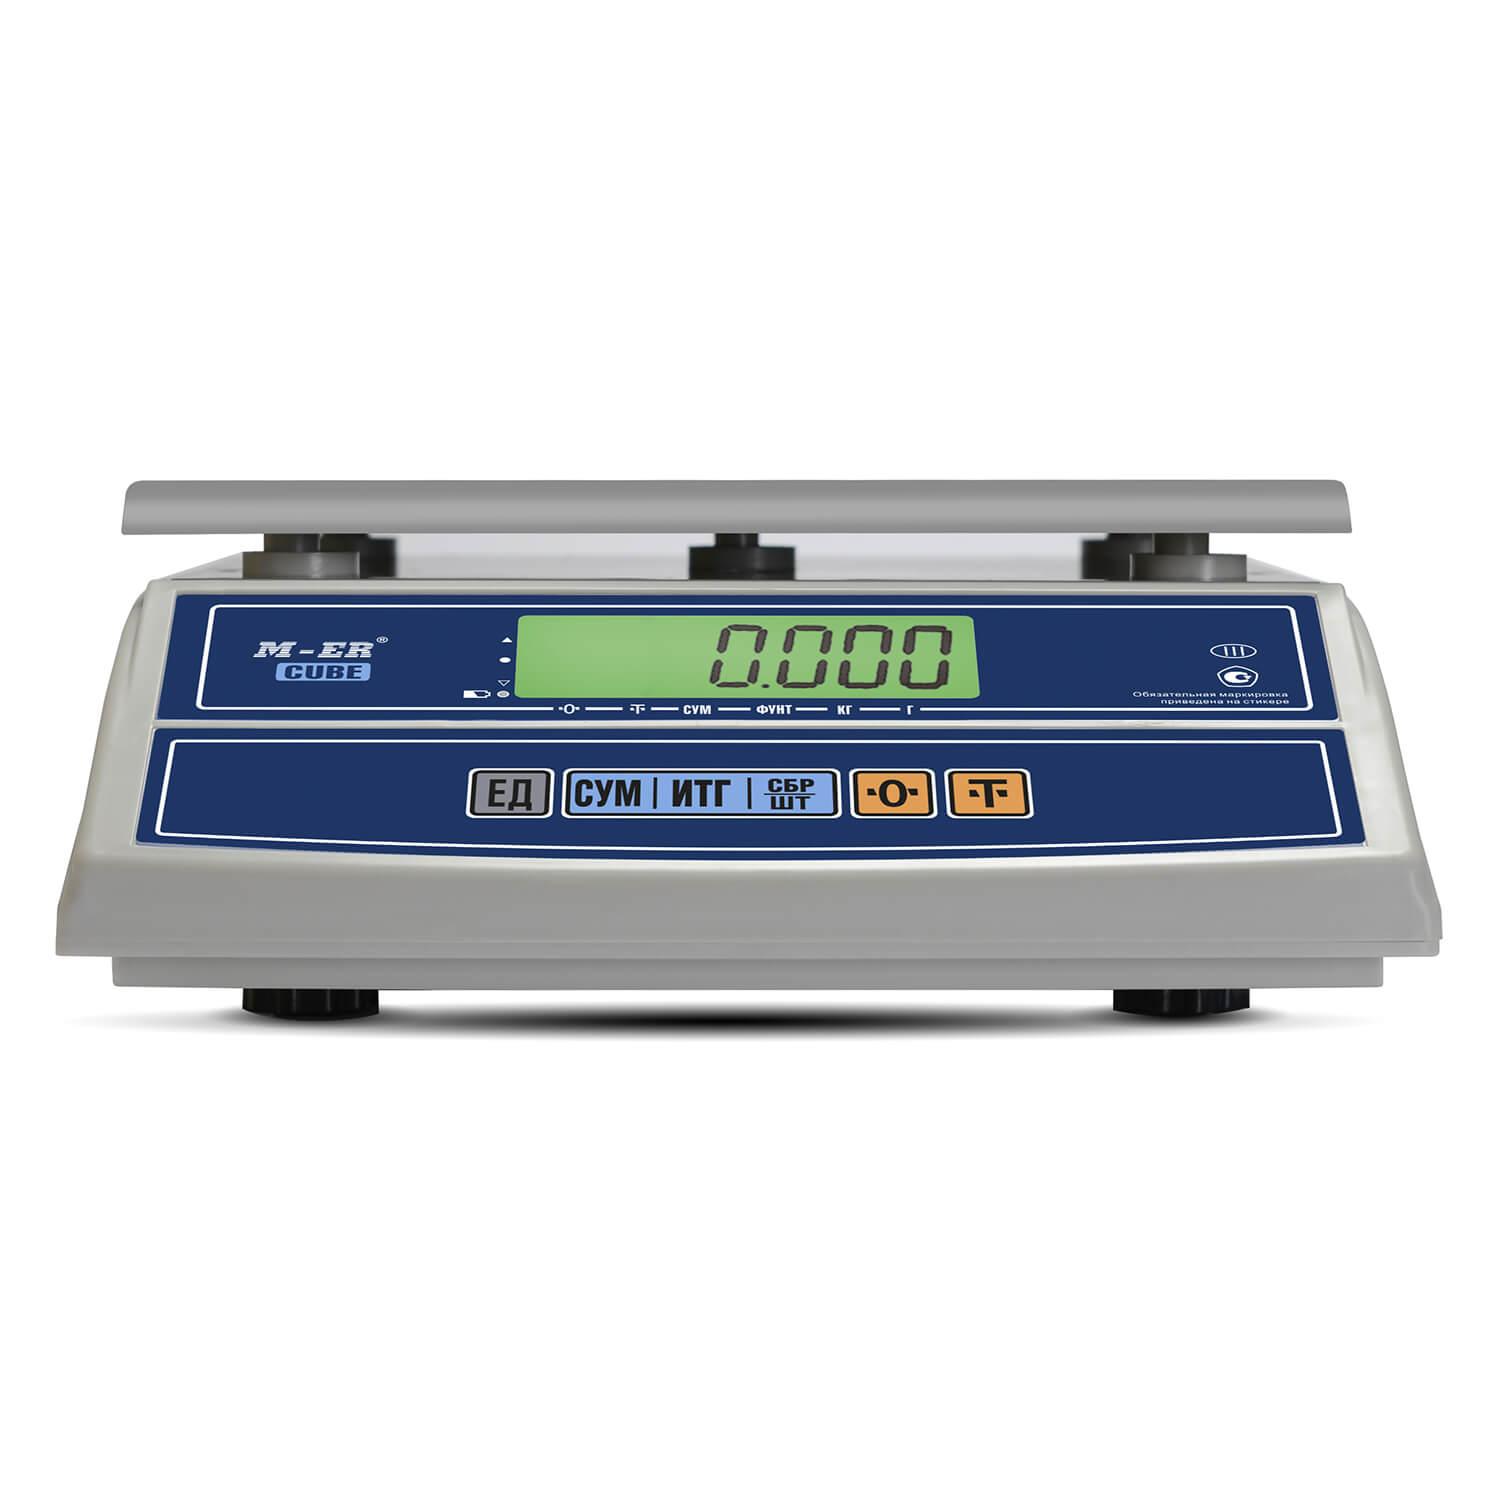 Фасовочные настольные весы M-ER 326 AFL-15.2 "Cube" LCD (3056)